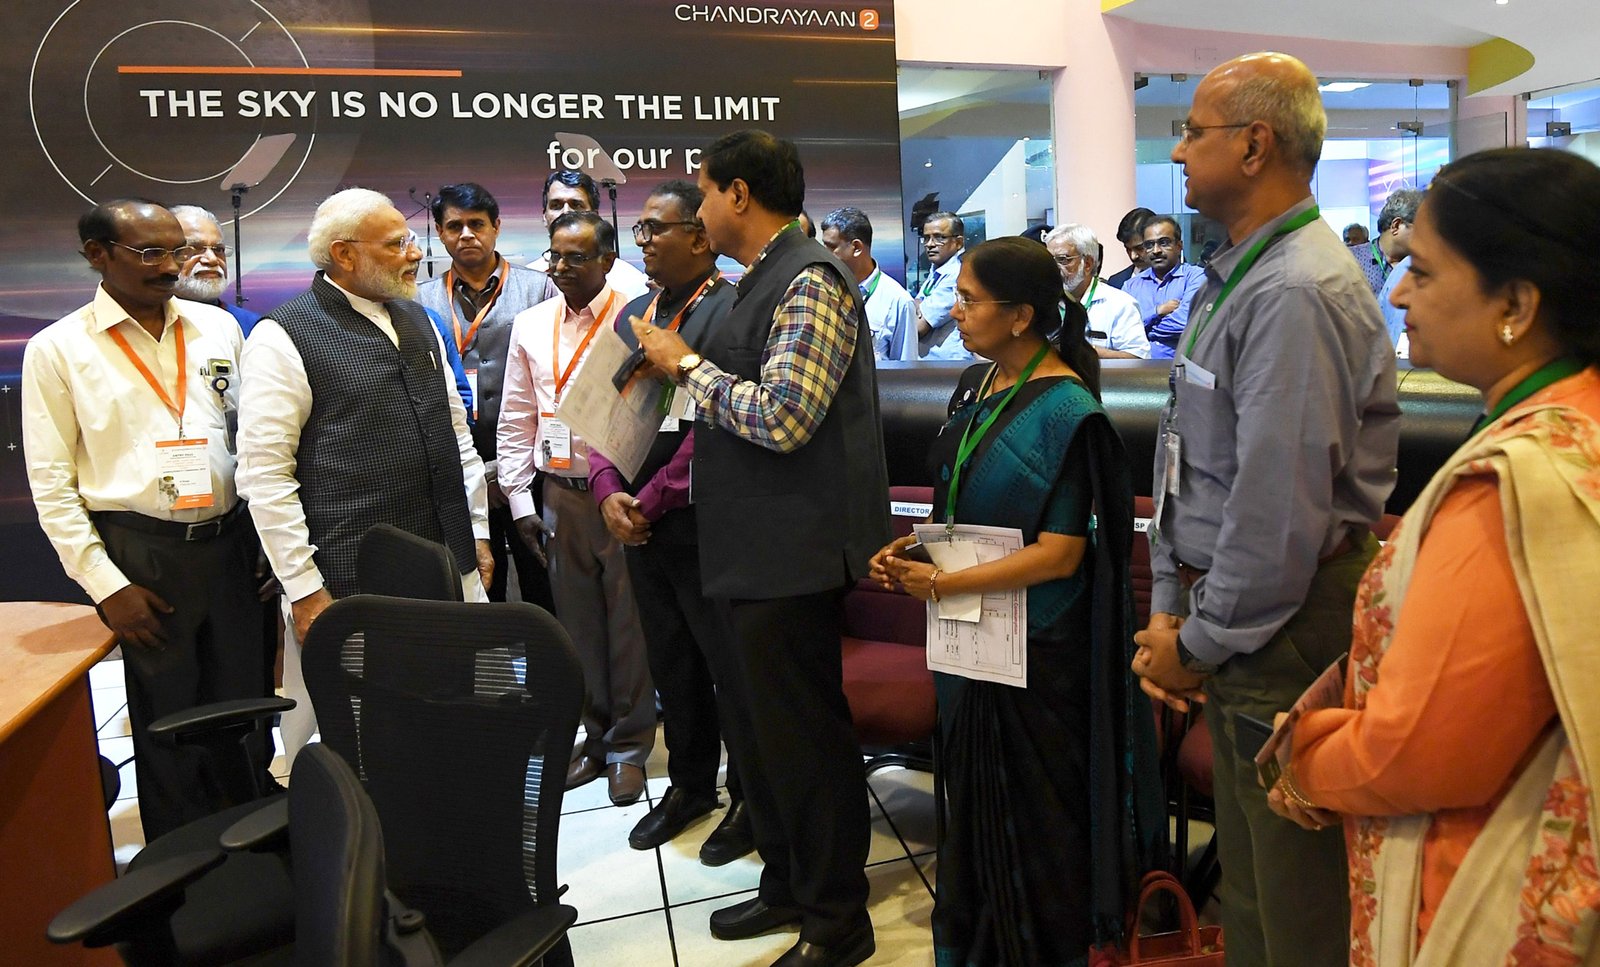 भारत के गौरव के साथ: प्रधानमंत्री श्री नरेंद्र मोदी 07 सितंबर, 2019 को बेंगलुरु में, ISRO मुख्यालय में वैज्ञानिकों के साथ बातचीत करते हुए I